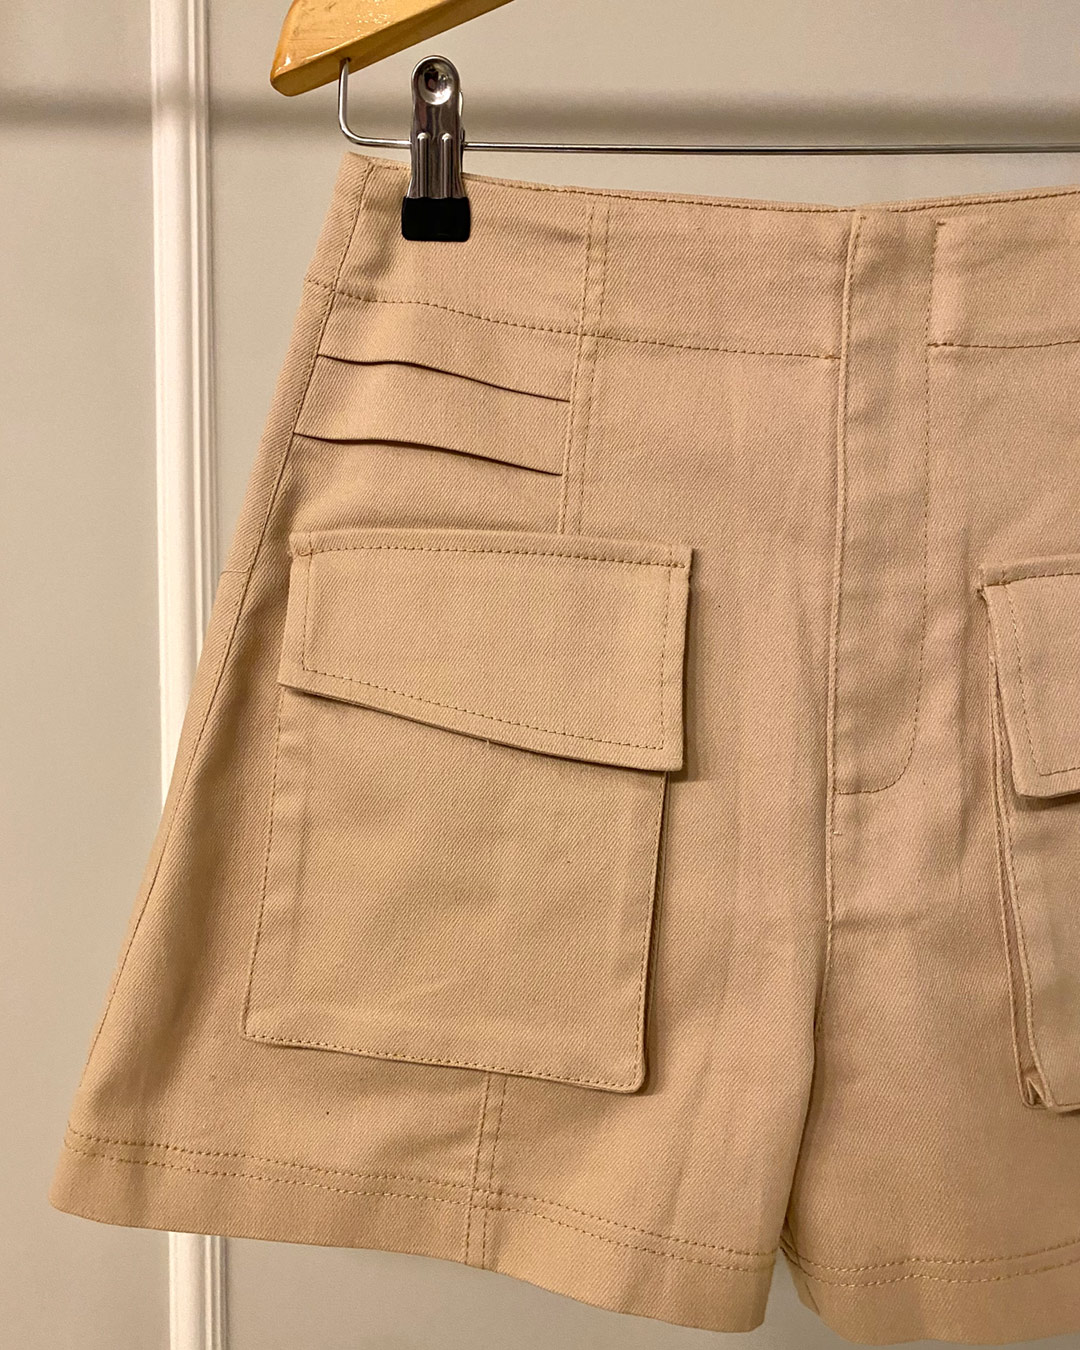 Dot Clothing - Dot Clothing Pockets Beige Shorts - 2058BEGE